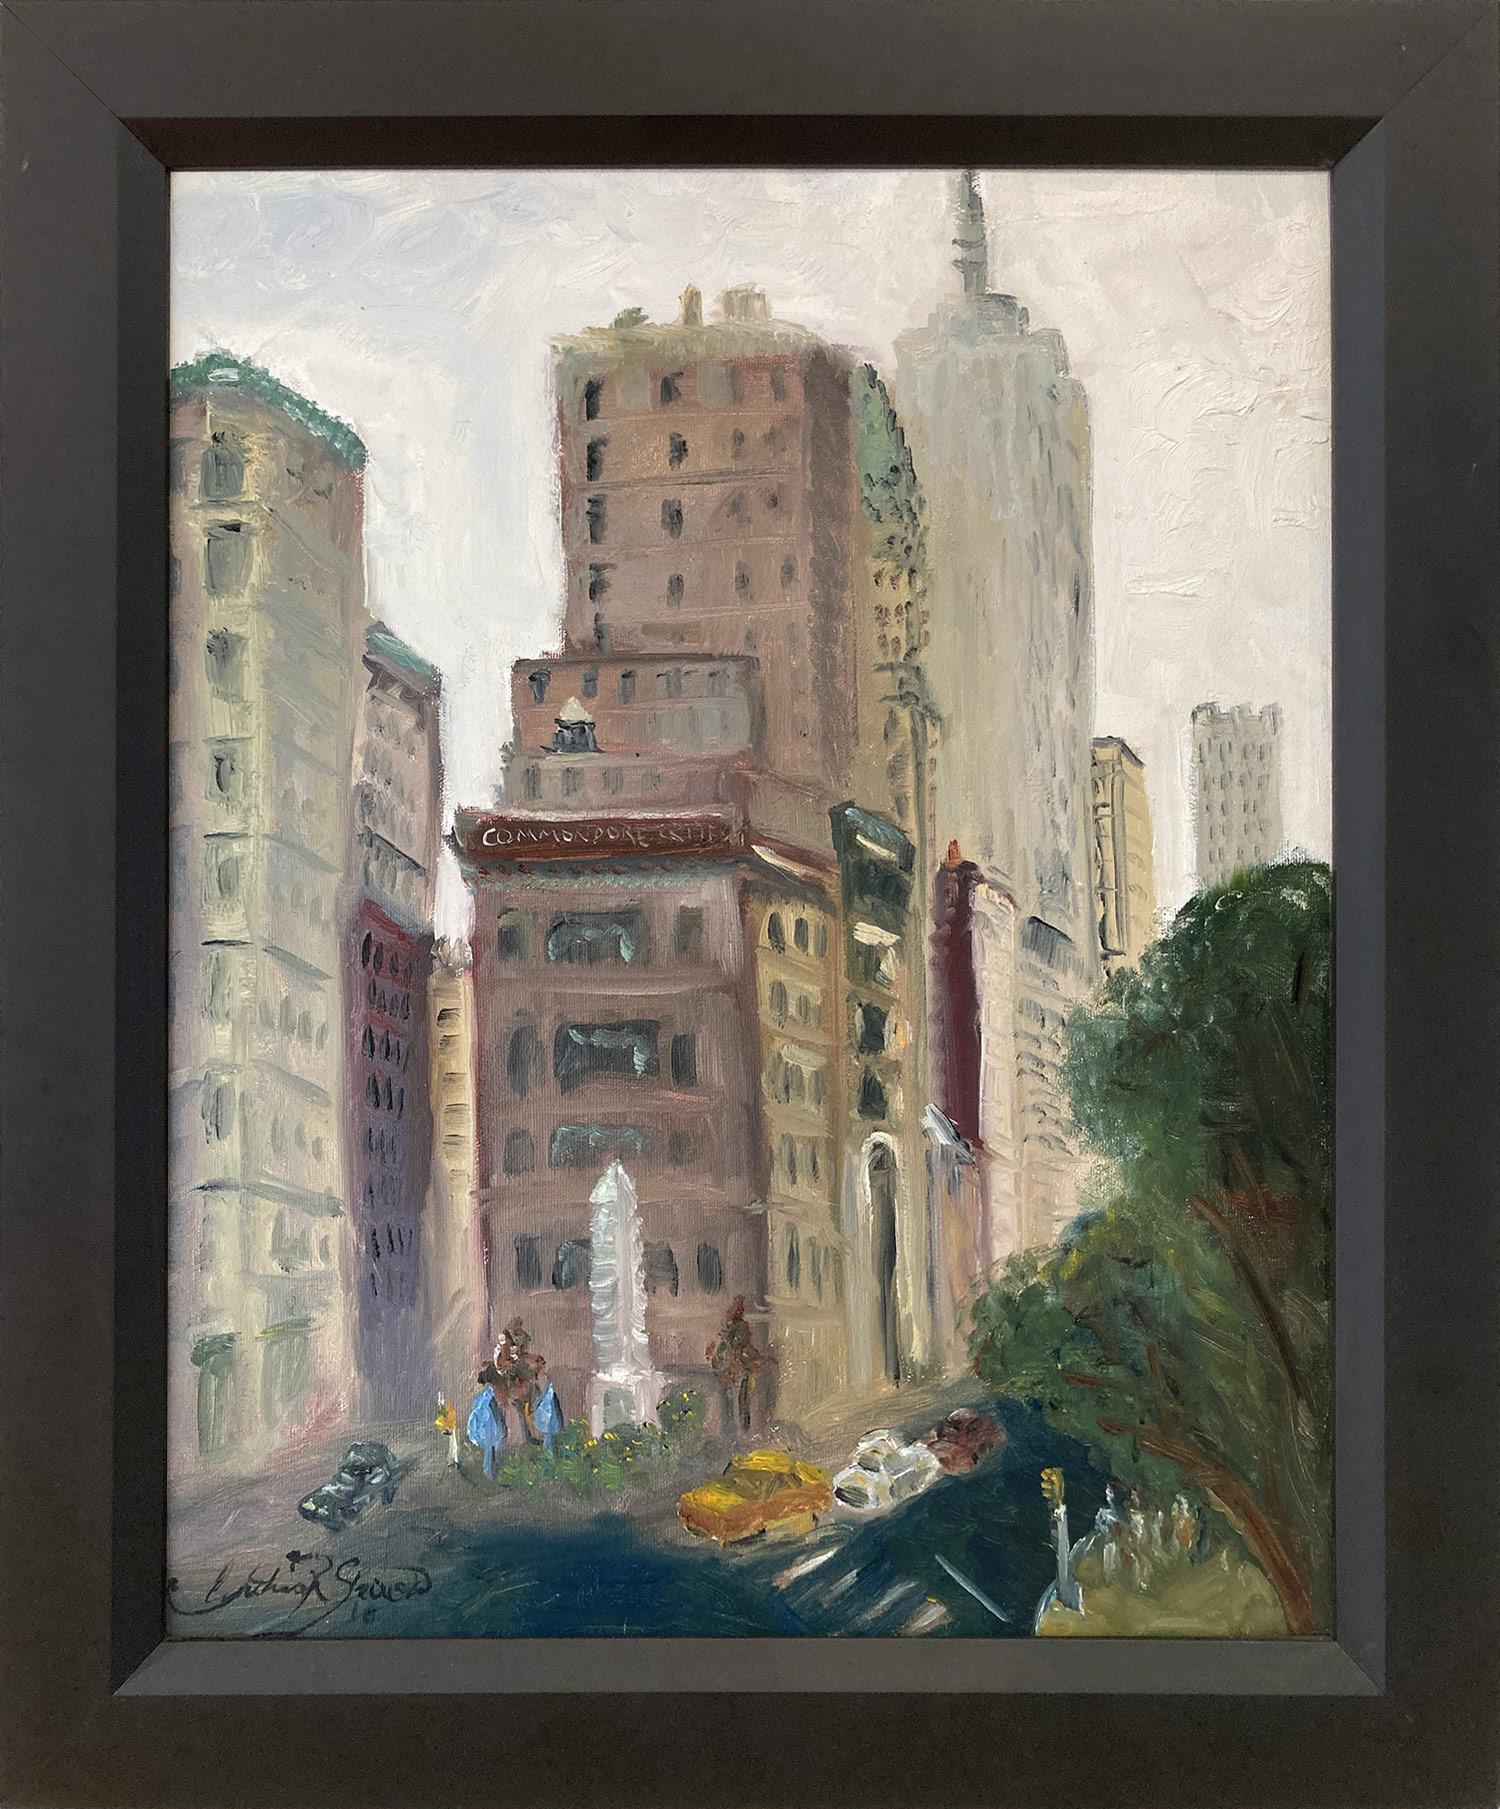 Landscape Painting Cindy Shaoul - "Empire State Building" Peinture à l'huile impressionniste d'une scène de rue de la ville de New York